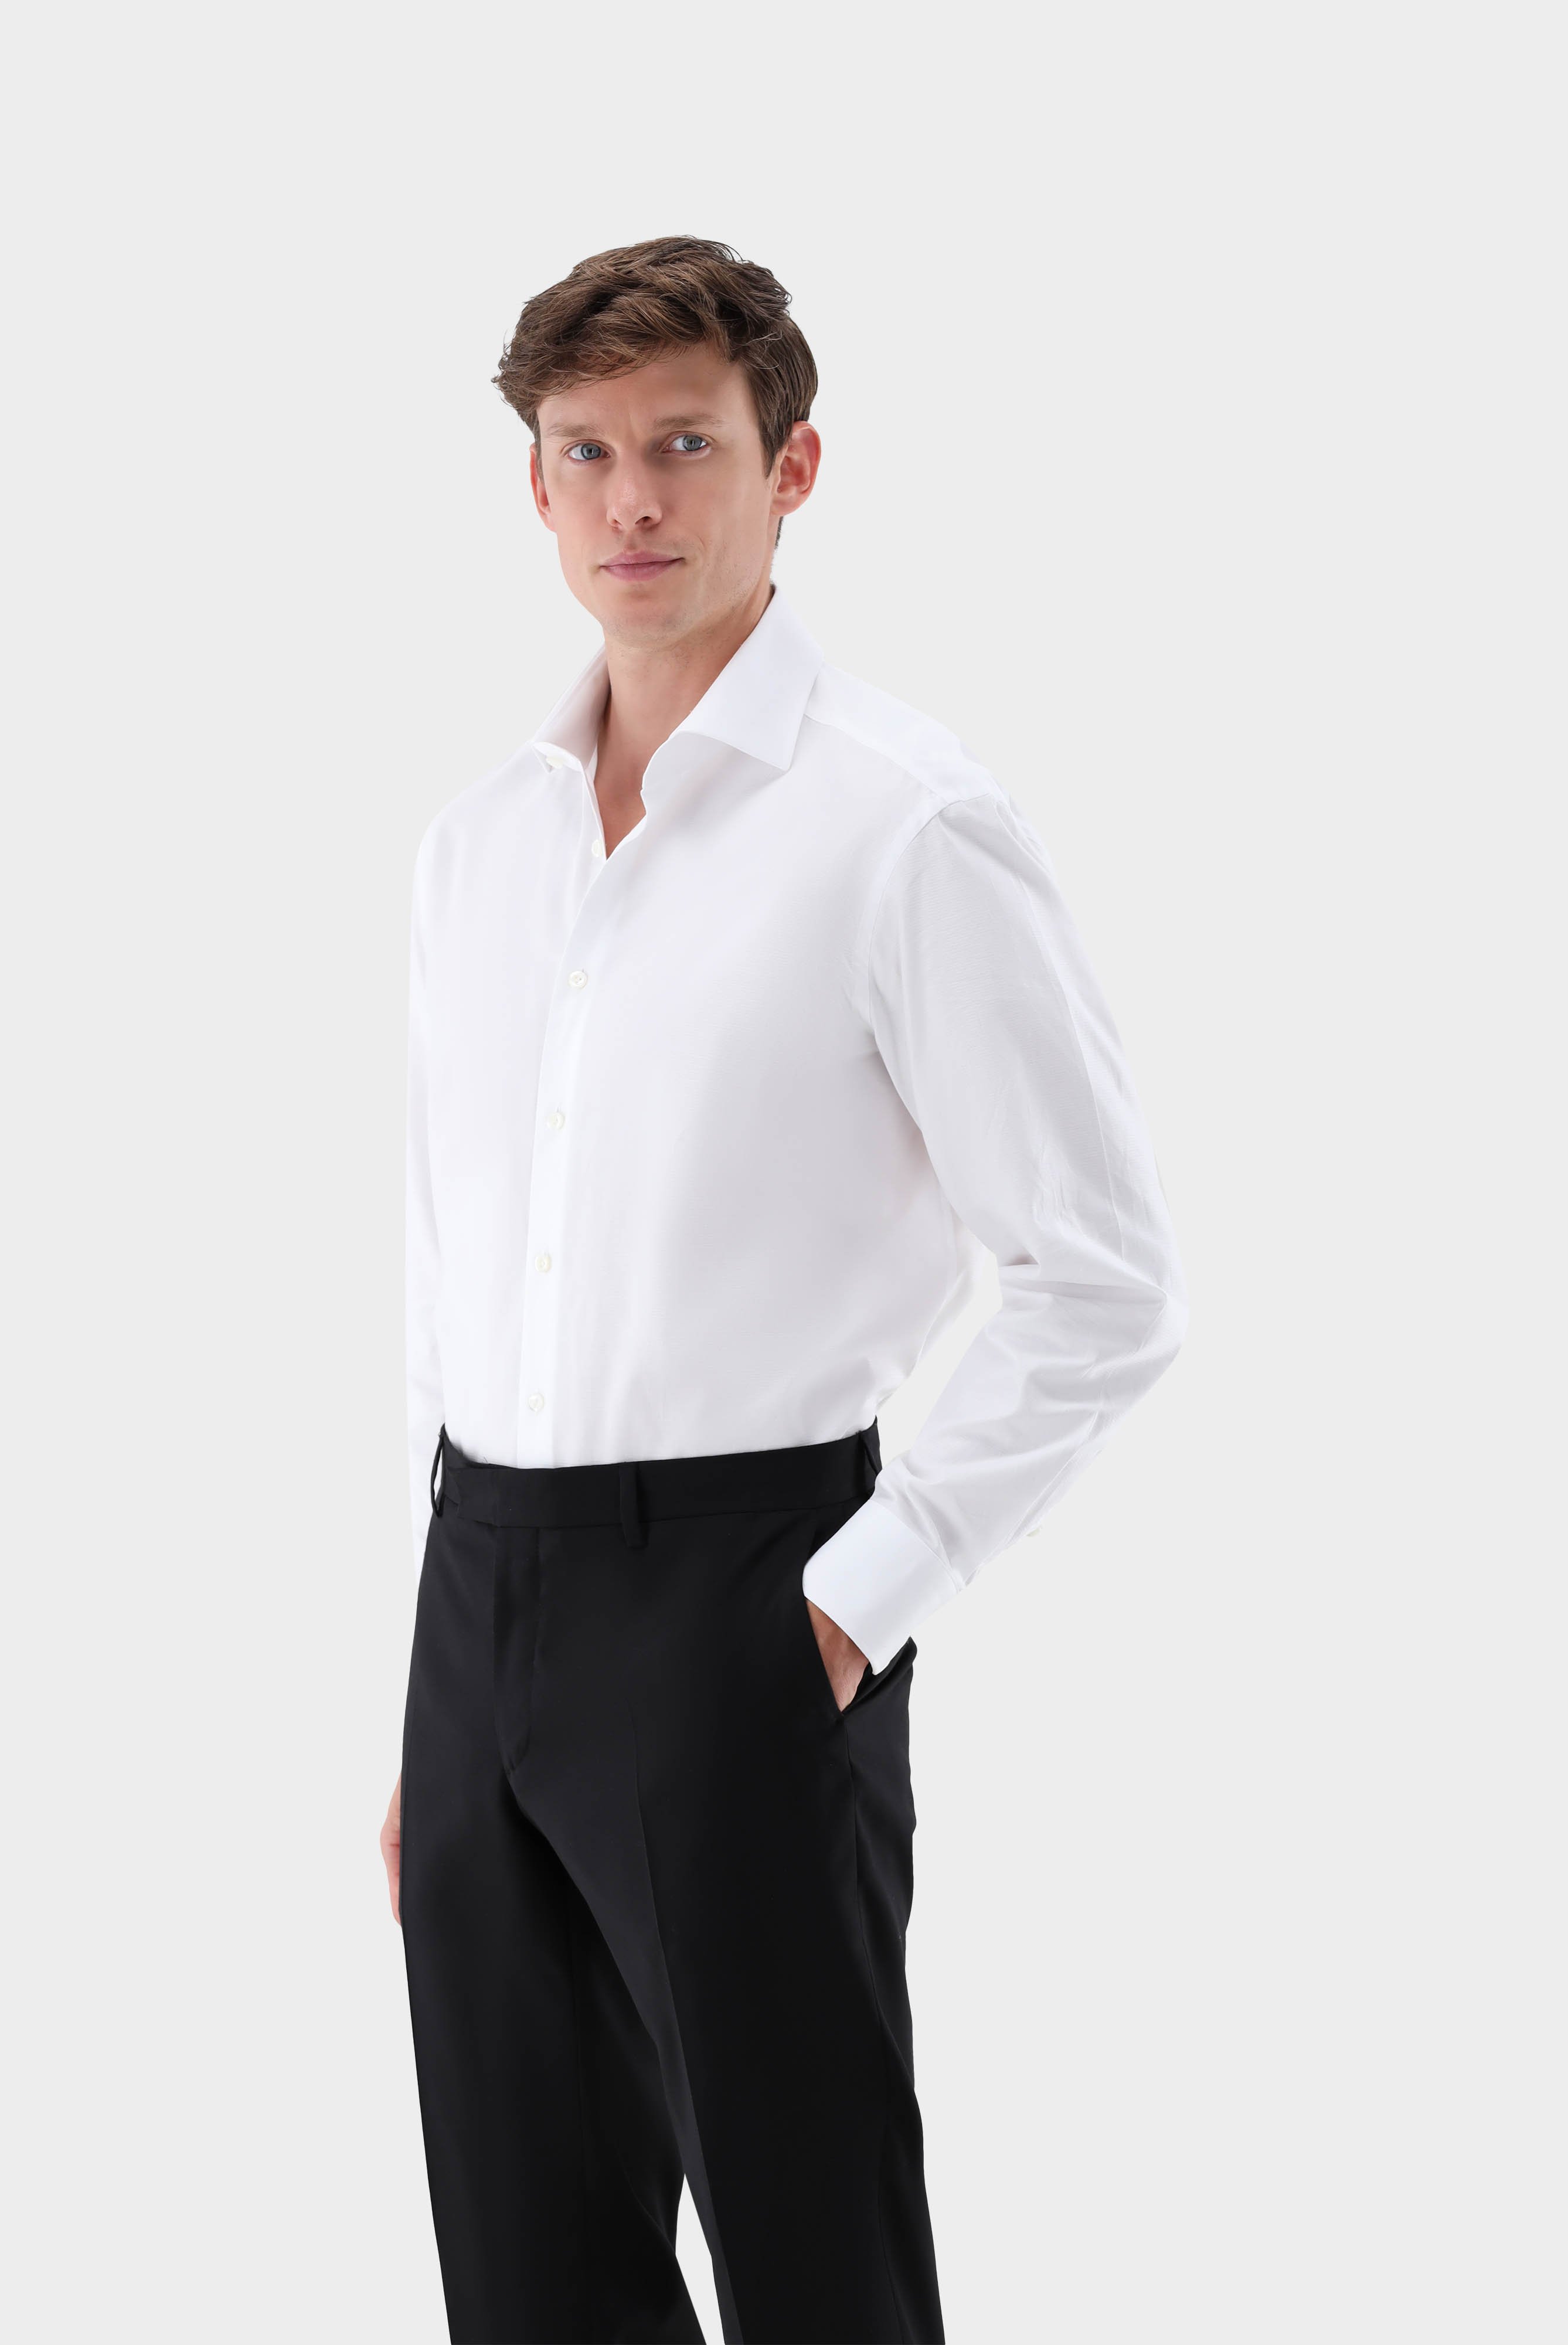 Bügelleichte Hemden+Bügelfreies Twil Hemd mit Struktur Tailor Fit+20.2020.BQ.150301.000.39